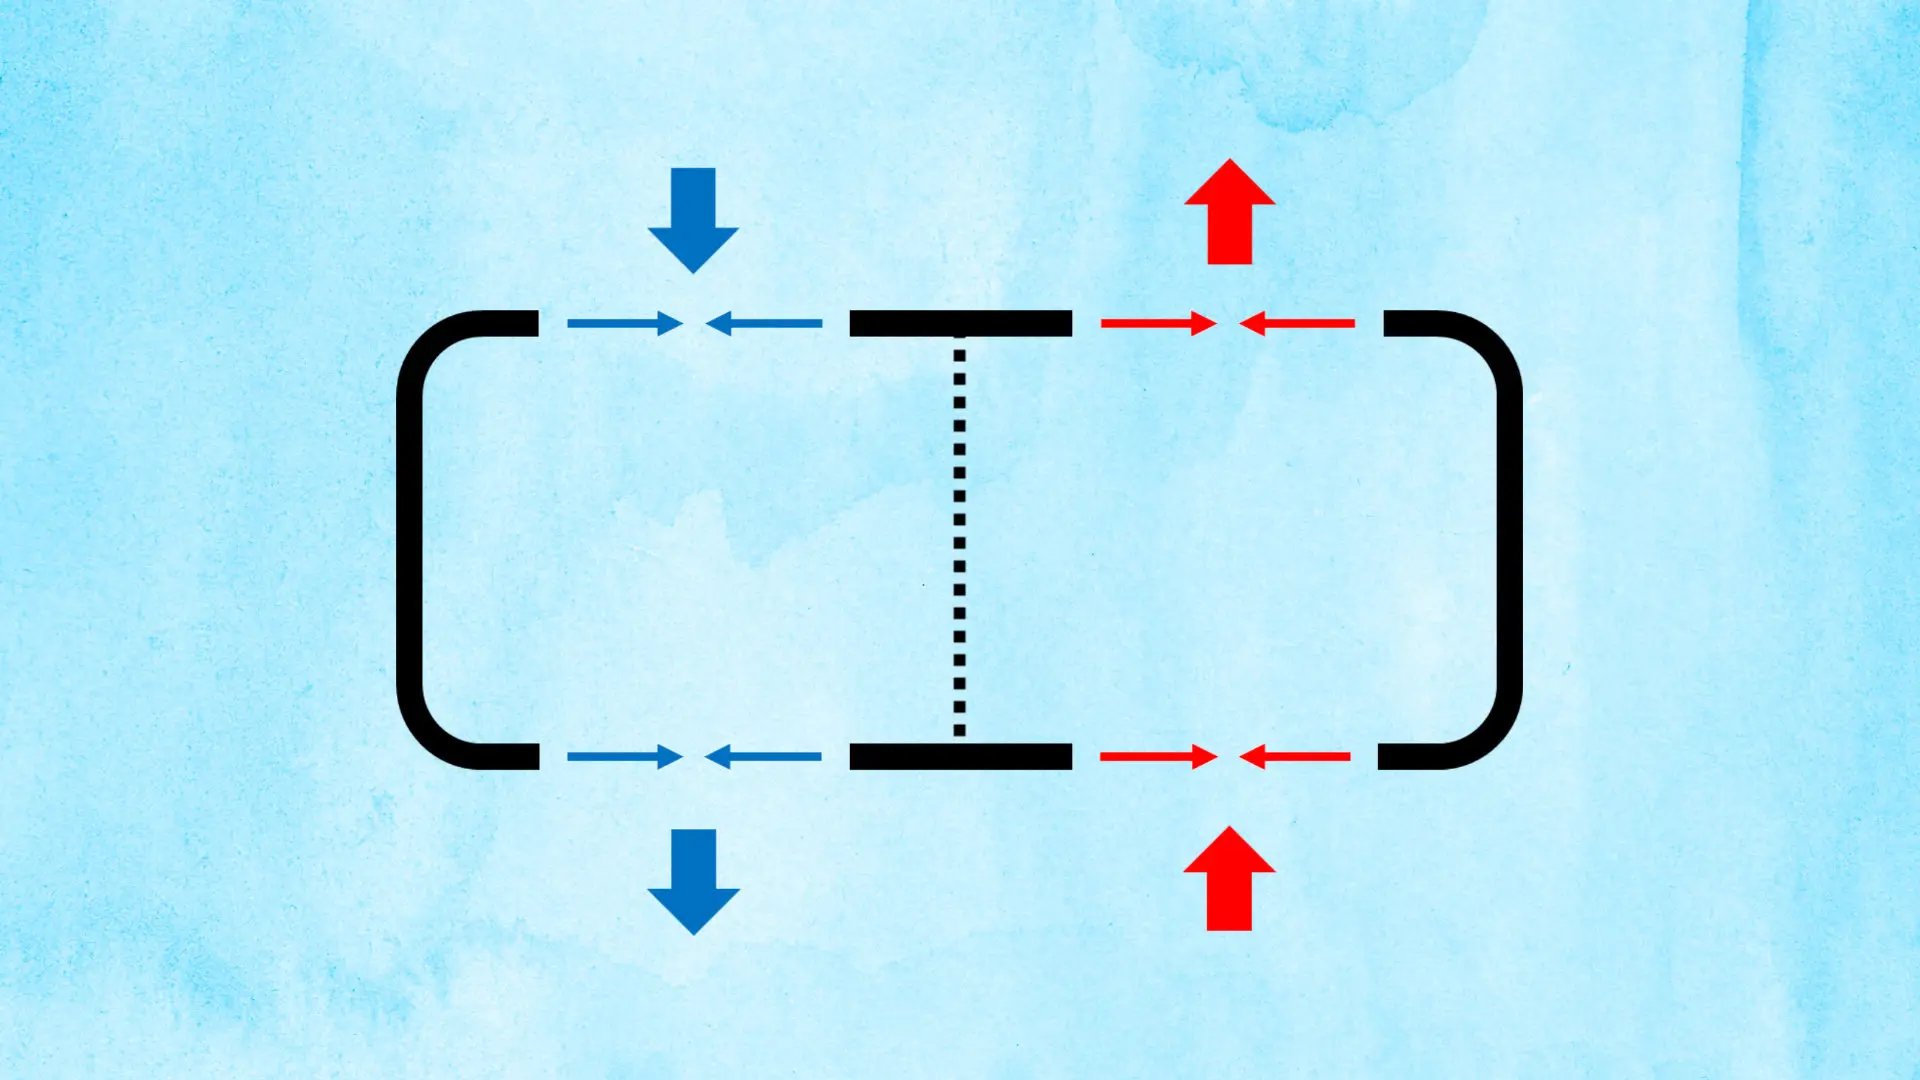 Illustration i diagram-stil. Pilar som visar separata flöden genom ett område.